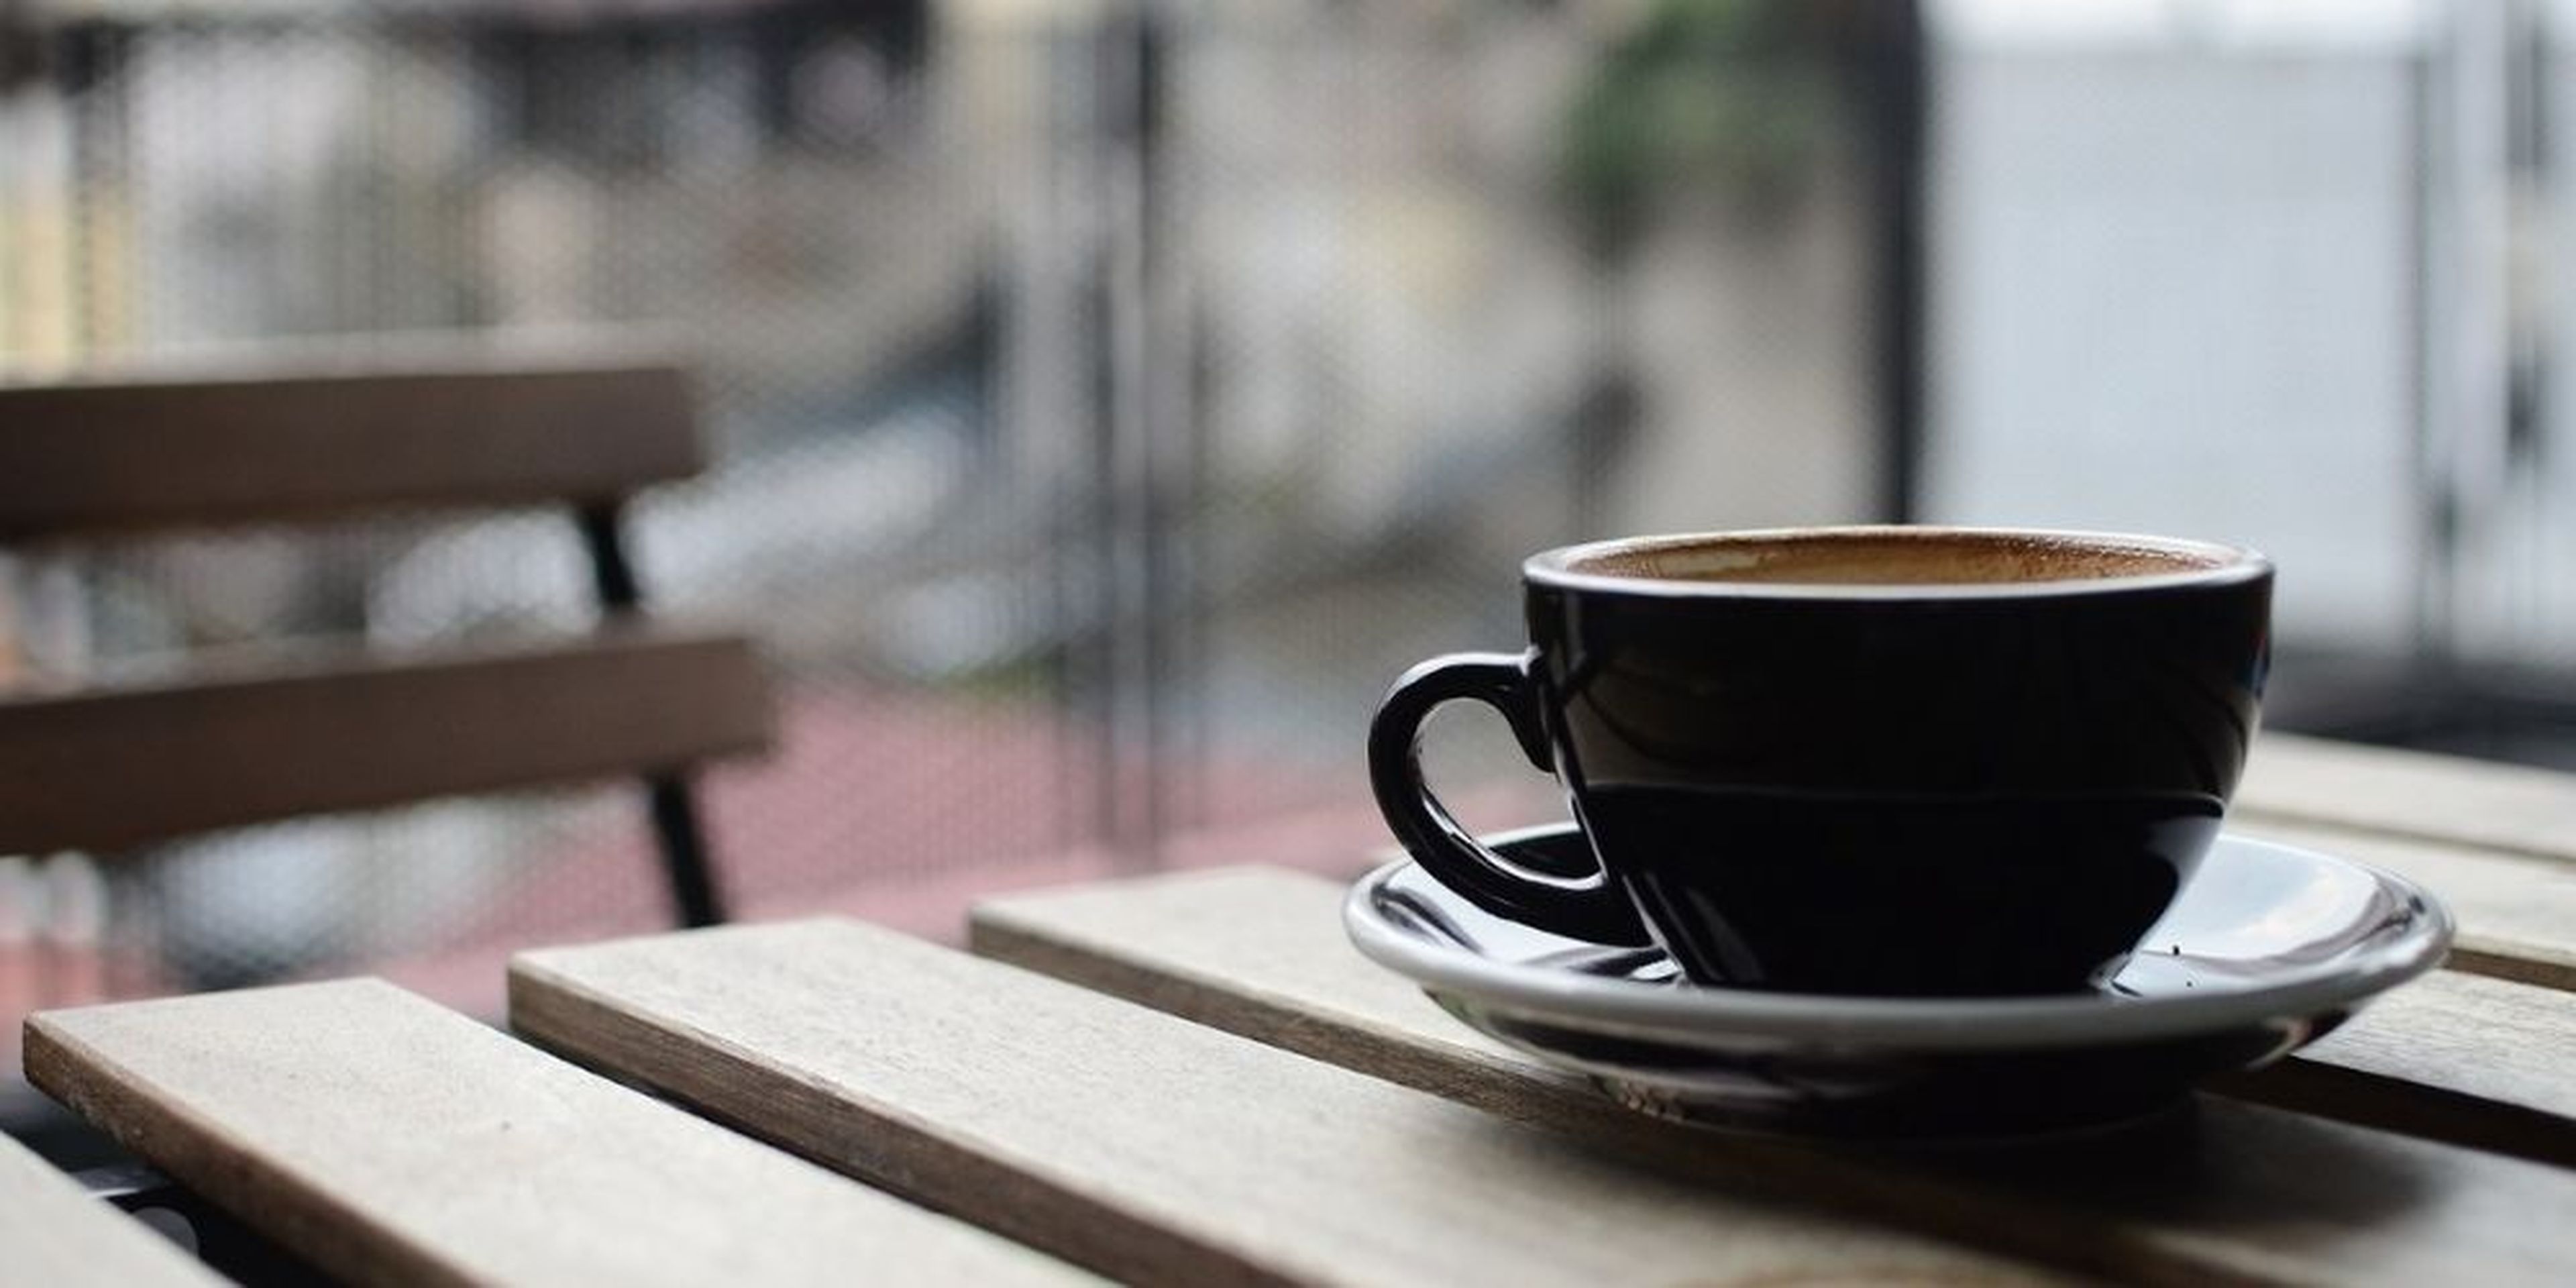 café espresso intenso en cápsulas Lavazza compatible con Nescafé Dolce  Gusto 16 ud.